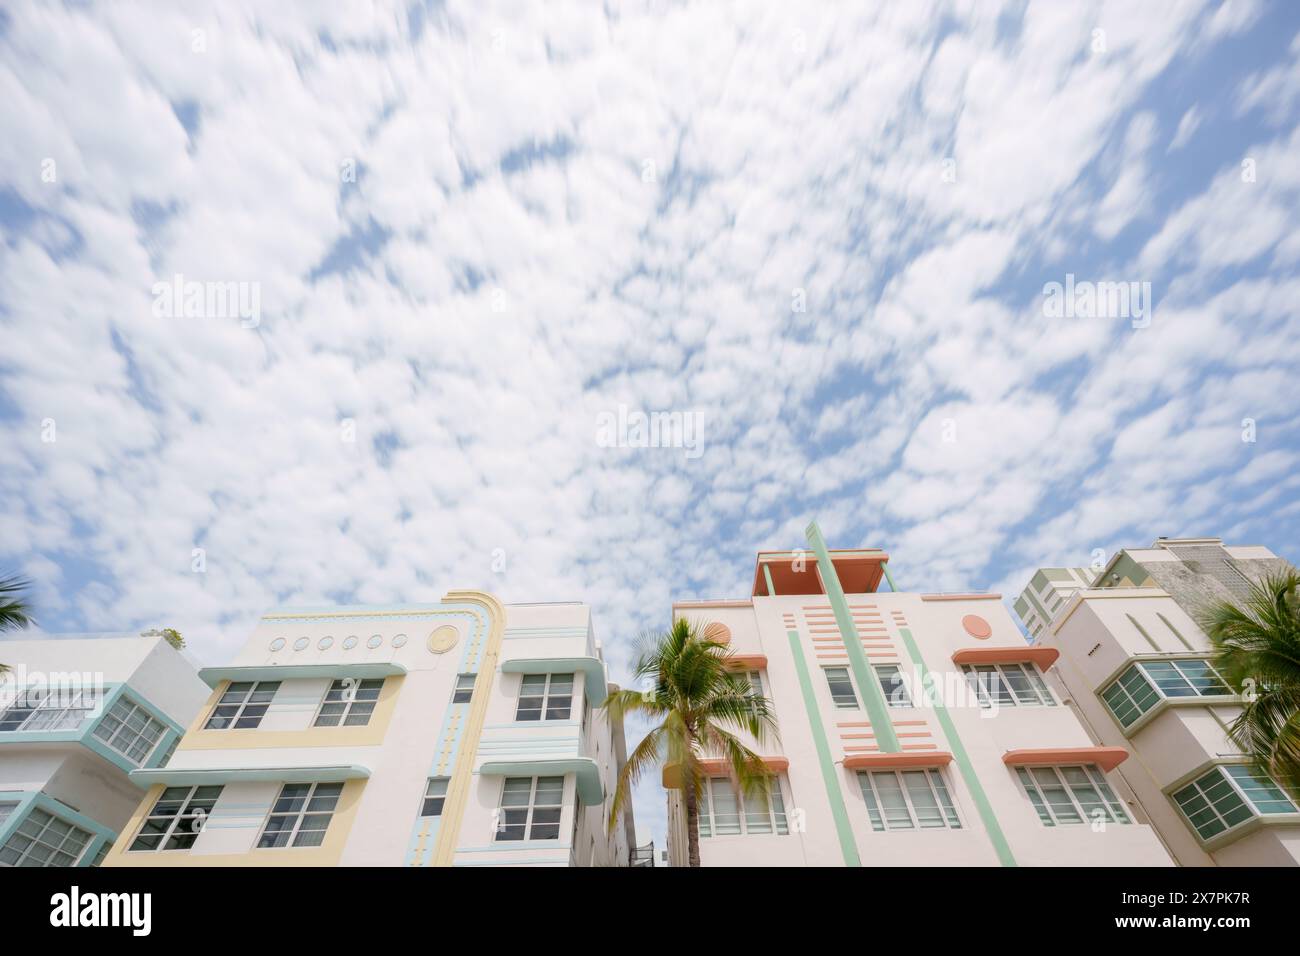 Miami Beach, Floride, États-Unis. Bâtiments historiques art déco avec nuages roulants à longue exposition Banque D'Images